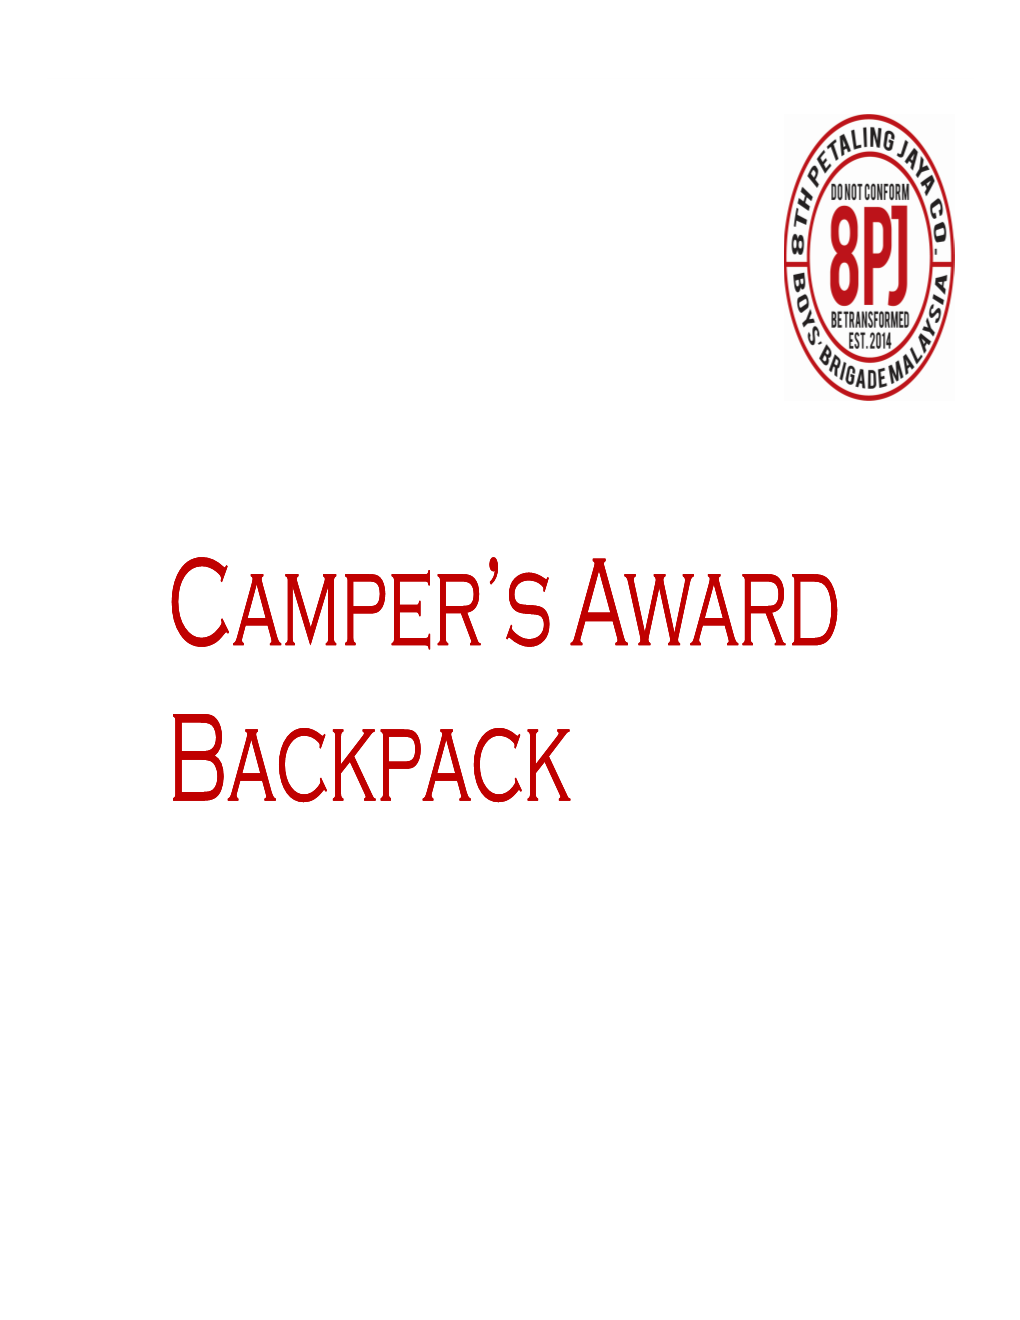 Camper's Award Backpack